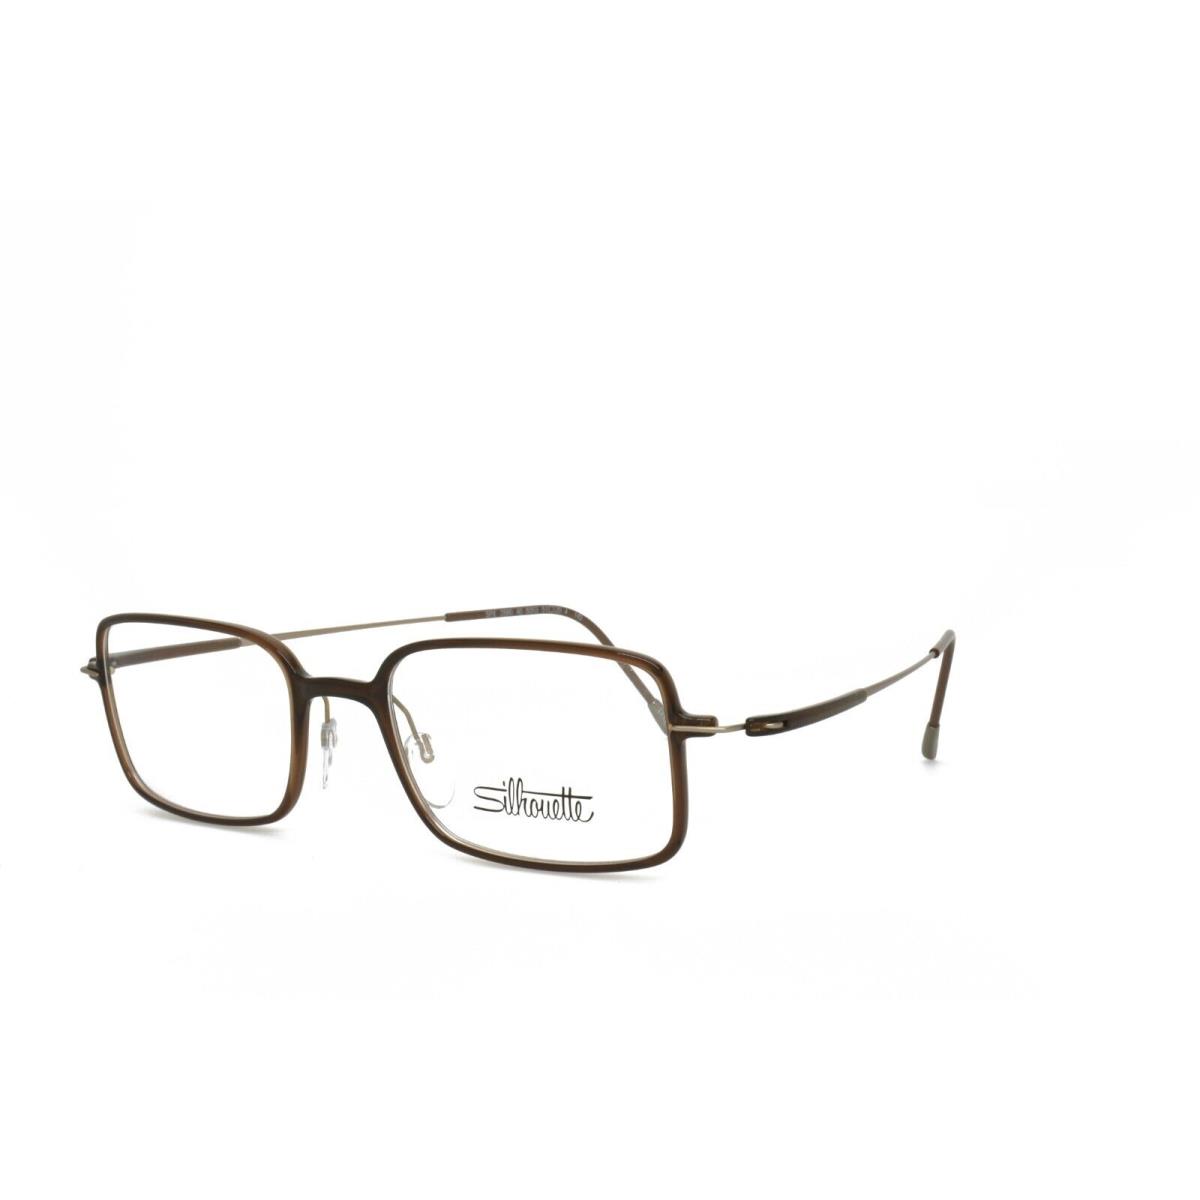 Silhouette 2880 40 6053 51-20-145 Brown Eyeglasses